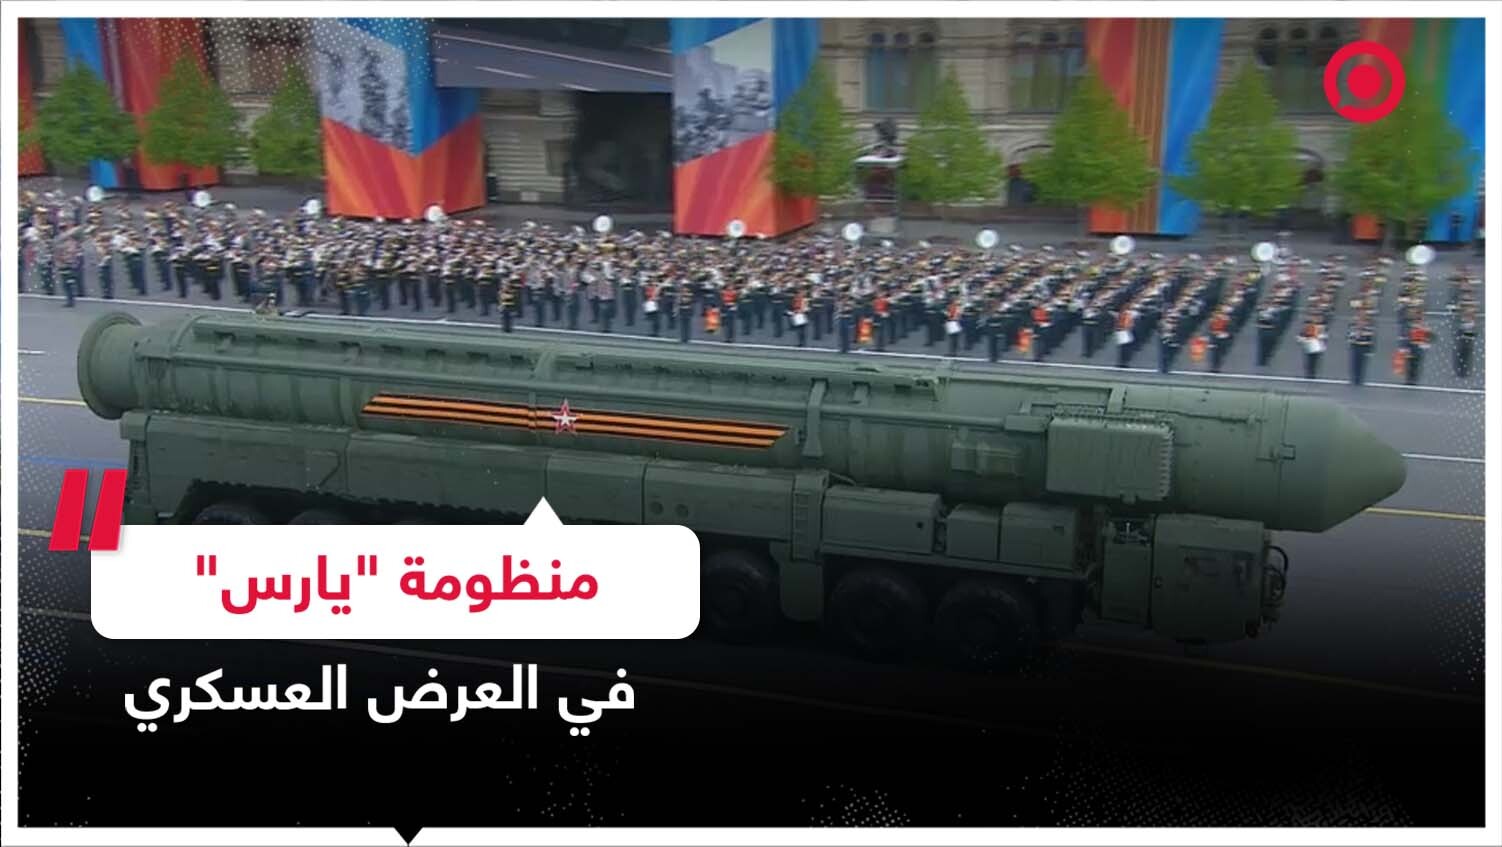 منظومة "يارس" للصواريخ العابرة للقارات تشارك في العرض العسكري بعيد النصر